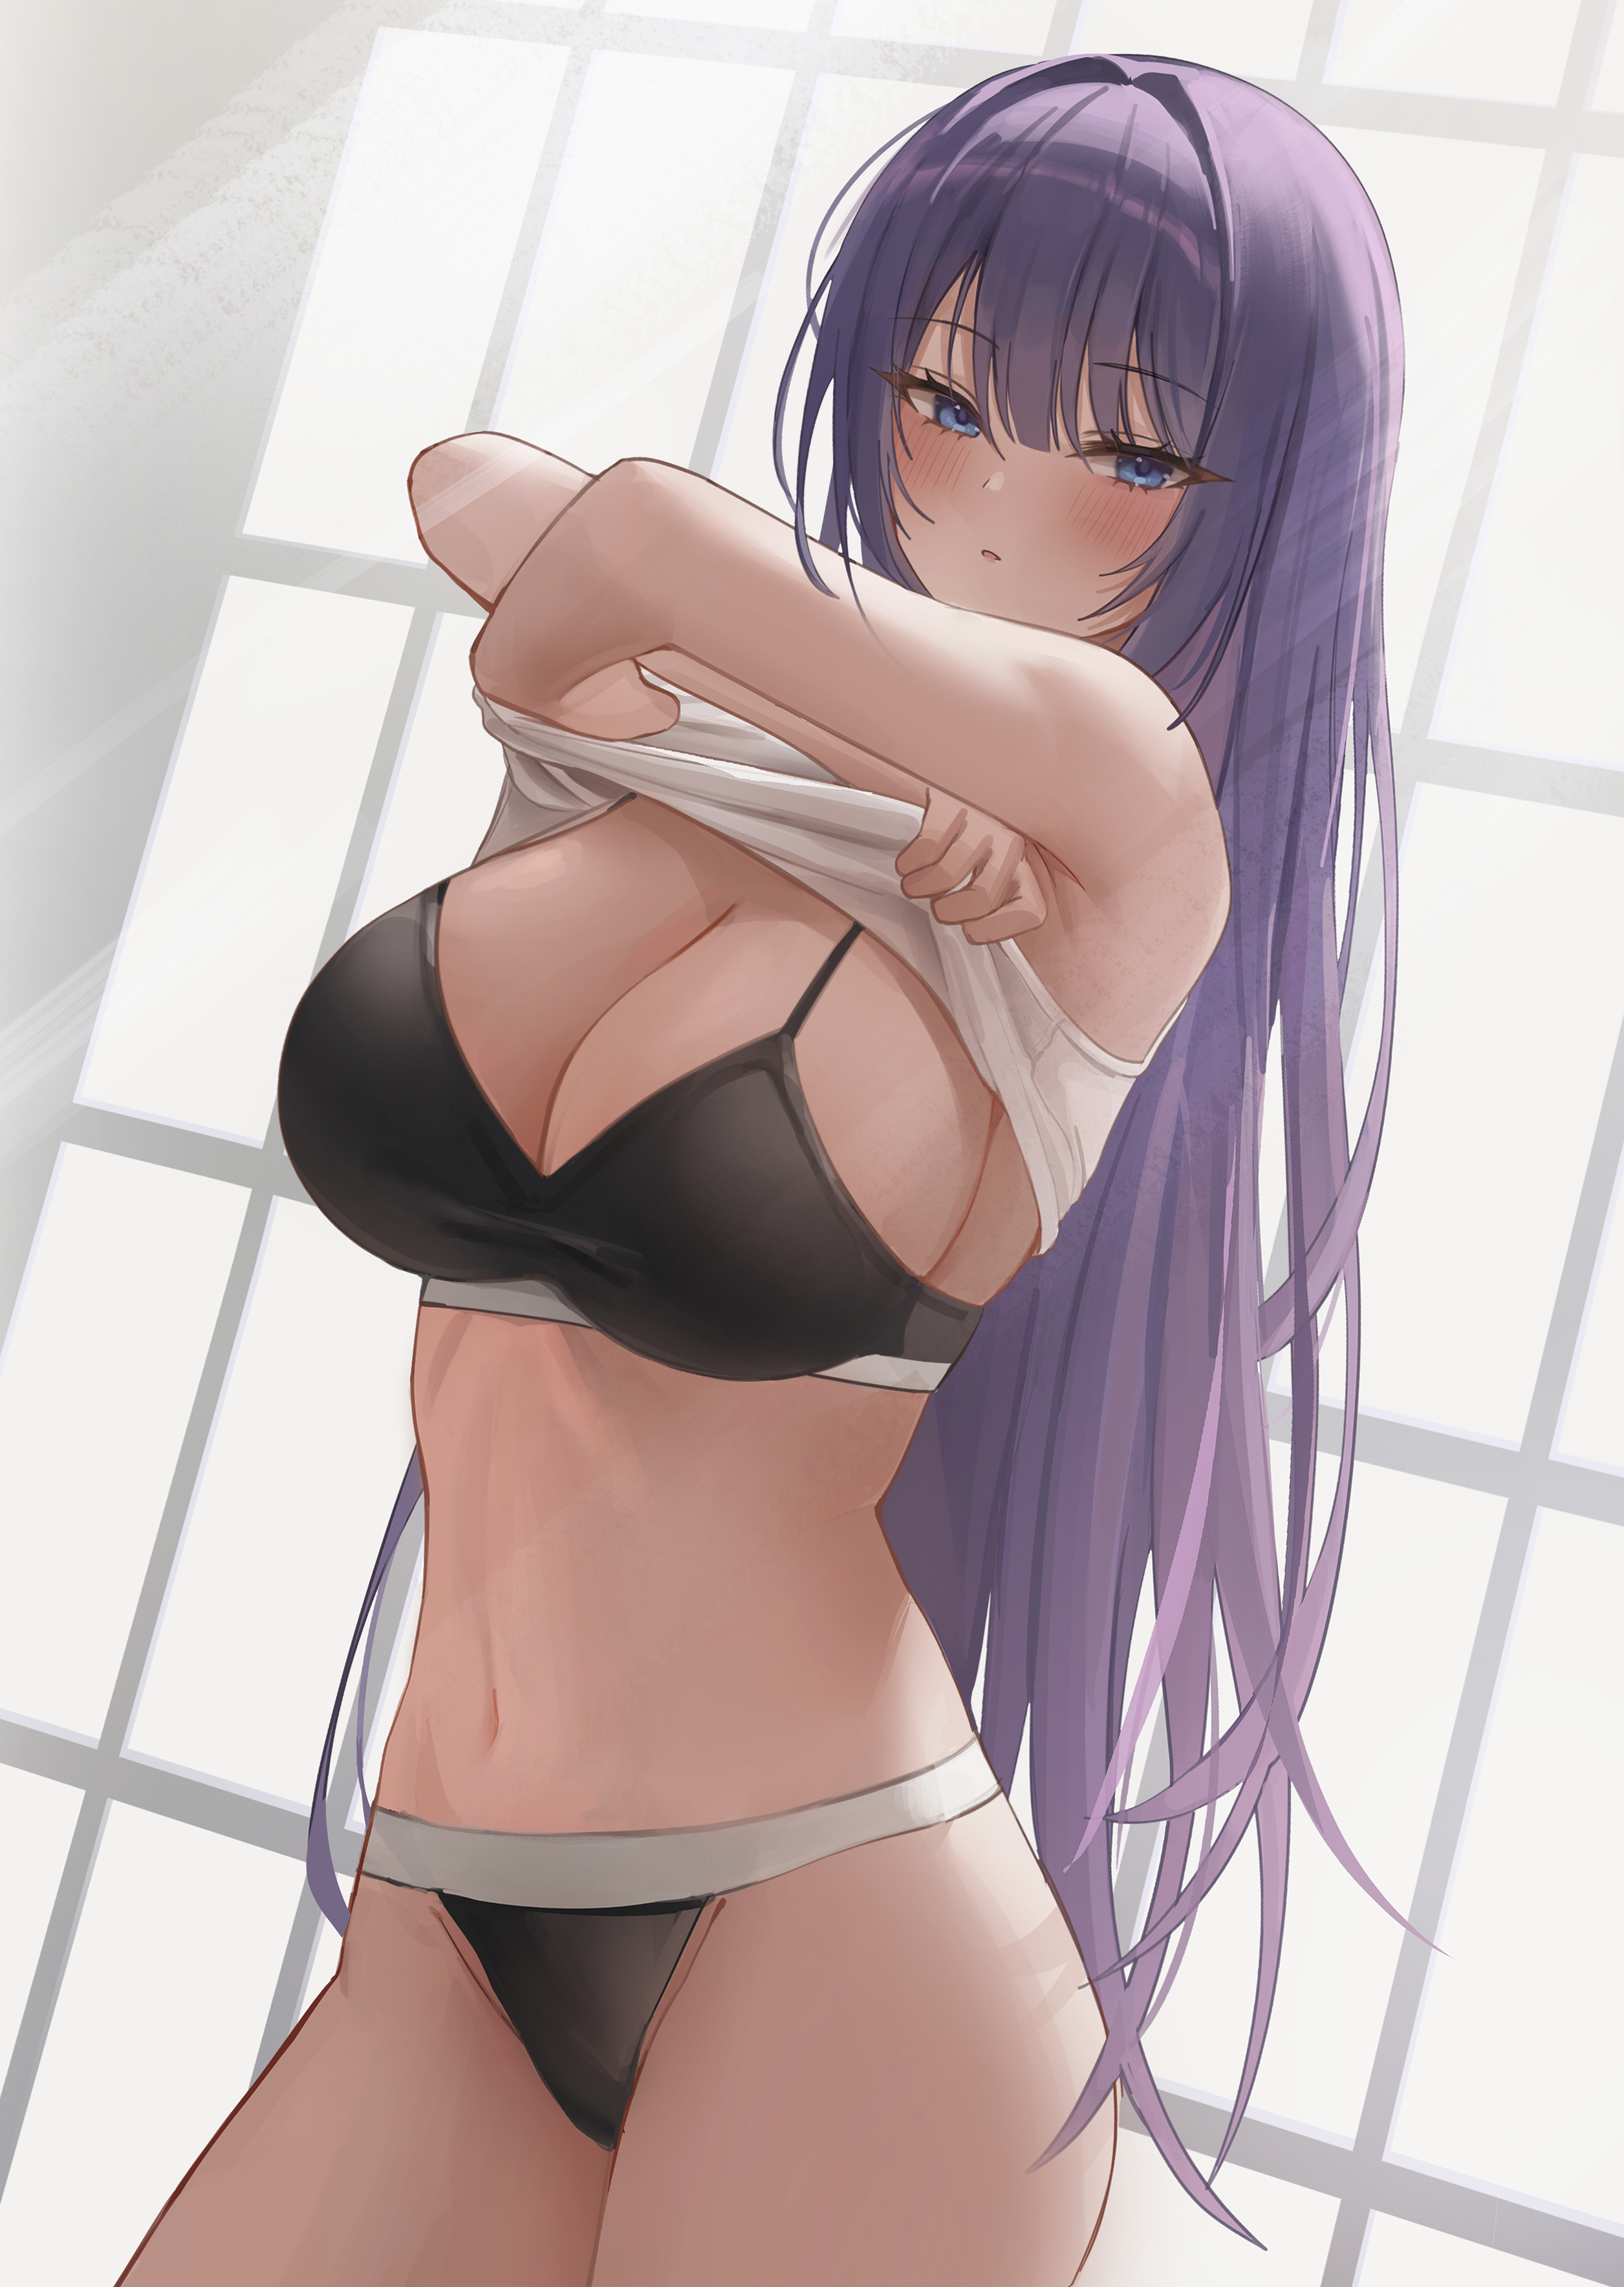 Anime 2511x3536 anime anime girls Biya artwork undressing underwear